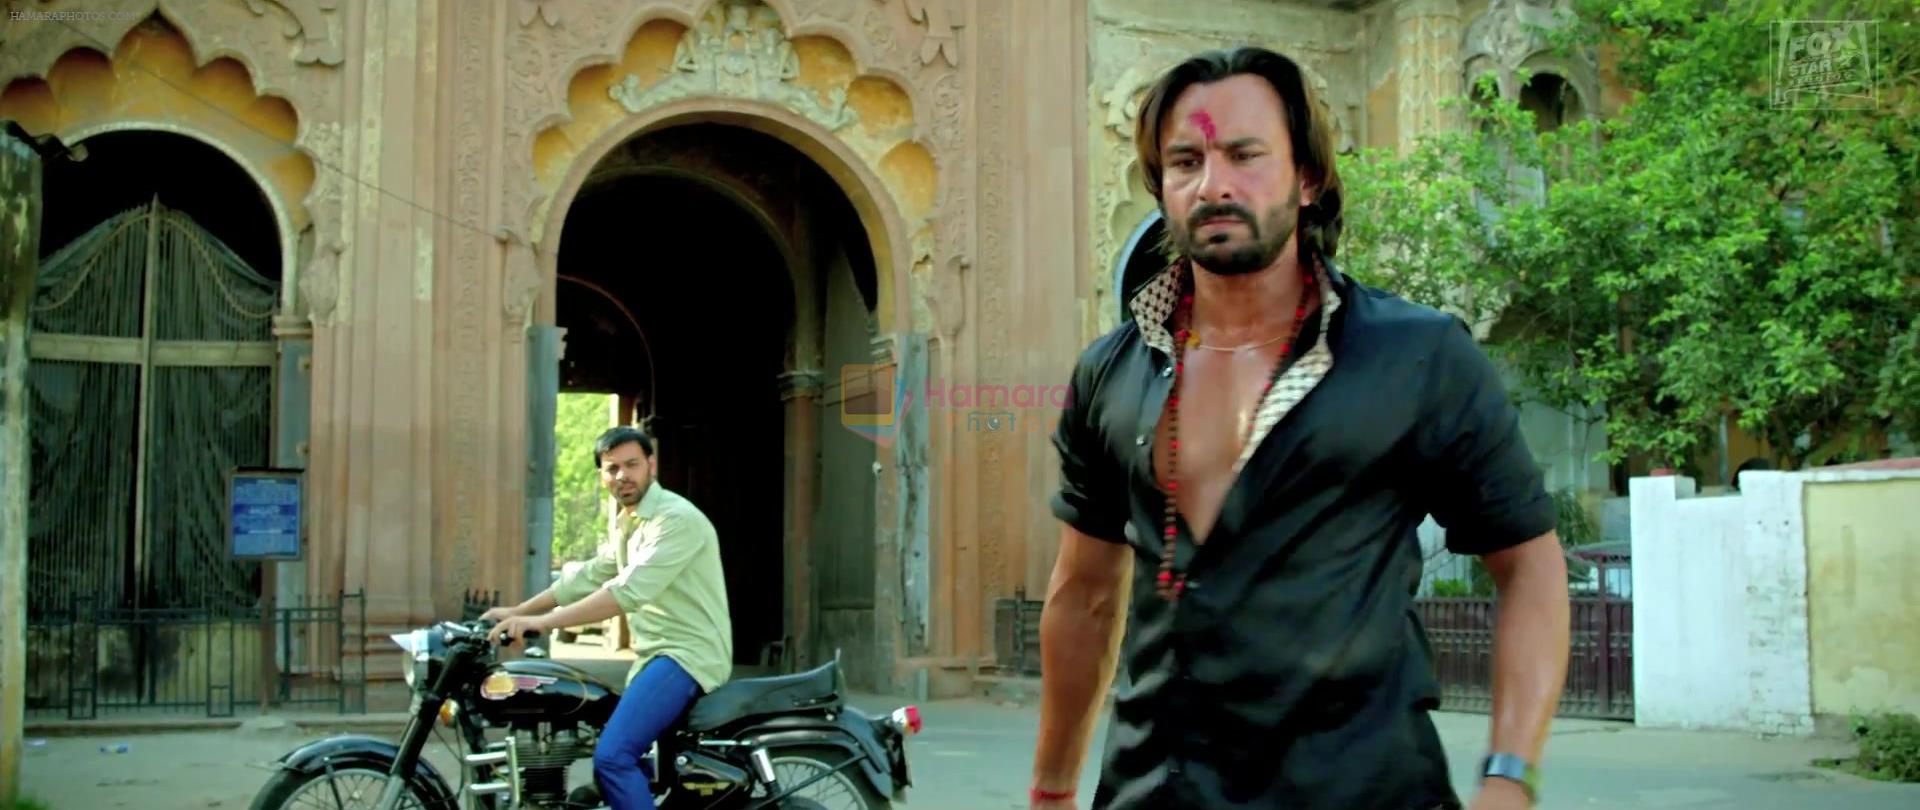 Saif Ali Khan as Raja Mishra in Bullett Raja movie still